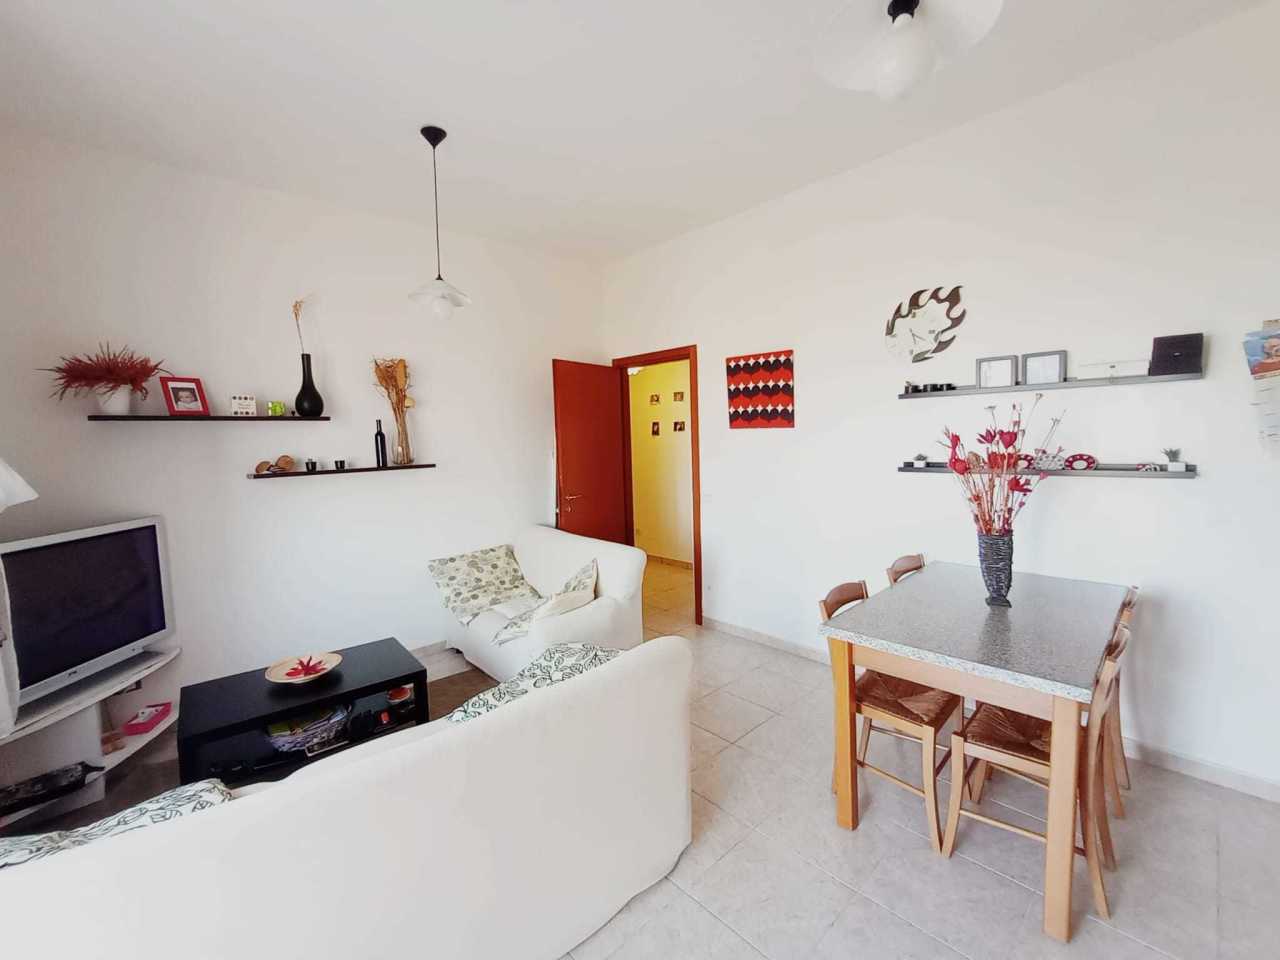 Appartamento in vendita a Belvedere Ostrense, 3 locali, prezzo € 75.000 | PortaleAgenzieImmobiliari.it